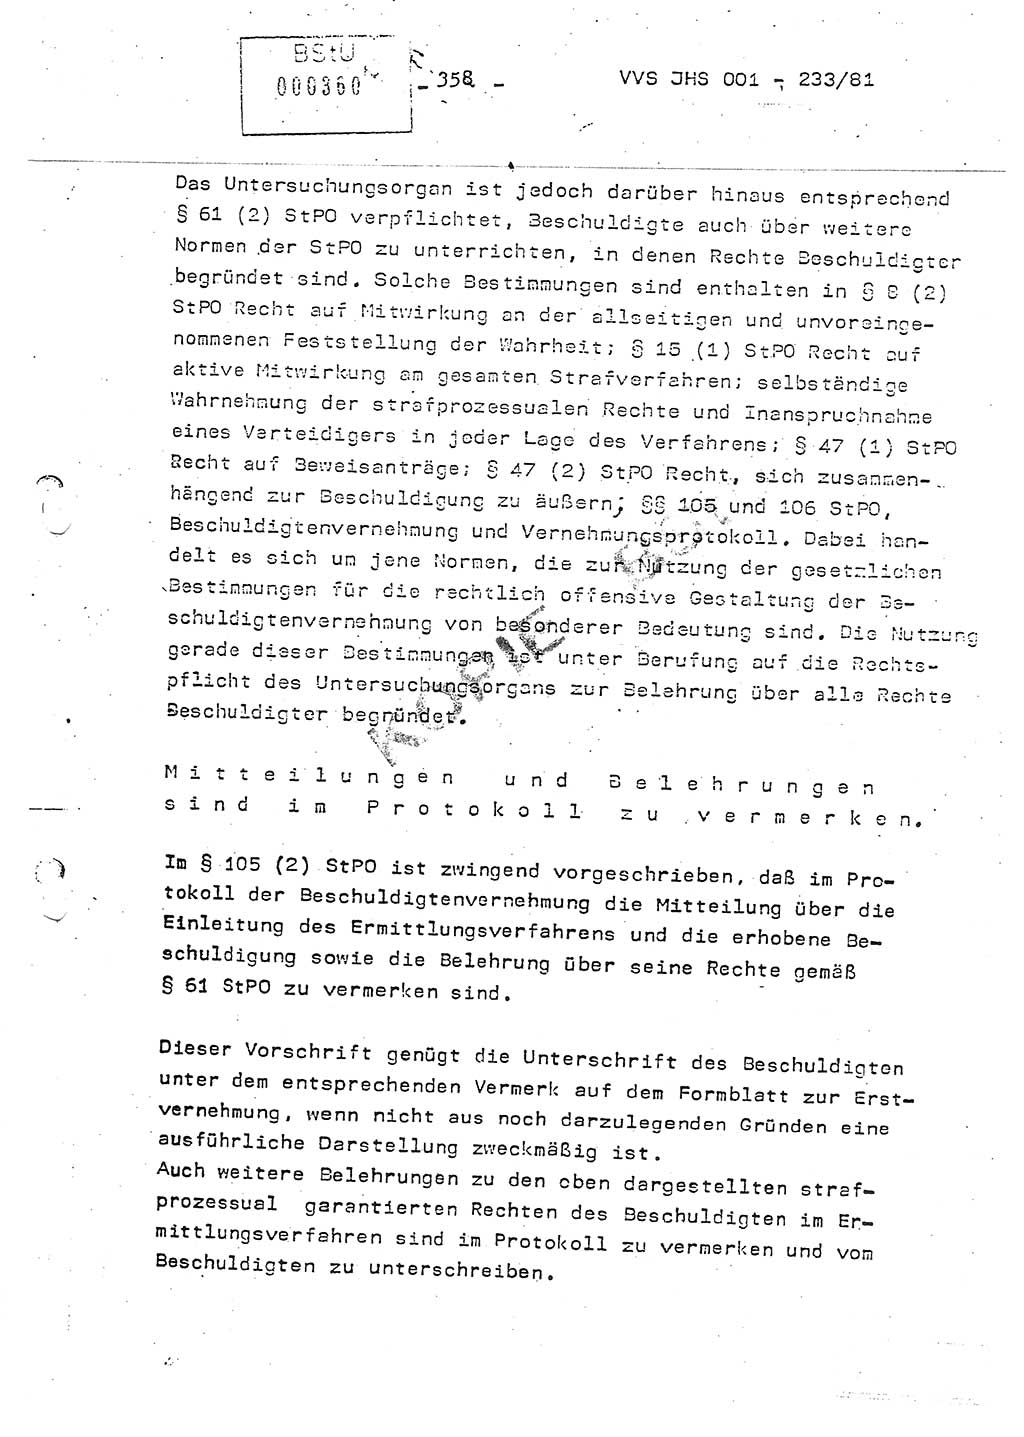 Dissertation Oberstleutnant Horst Zank (JHS), Oberstleutnant Dr. Karl-Heinz Knoblauch (JHS), Oberstleutnant Gustav-Adolf Kowalewski (HA Ⅸ), Oberstleutnant Wolfgang Plötner (HA Ⅸ), Ministerium für Staatssicherheit (MfS) [Deutsche Demokratische Republik (DDR)], Juristische Hochschule (JHS), Vertrauliche Verschlußsache (VVS) o001-233/81, Potsdam 1981, Blatt 358 (Diss. MfS DDR JHS VVS o001-233/81 1981, Bl. 358)